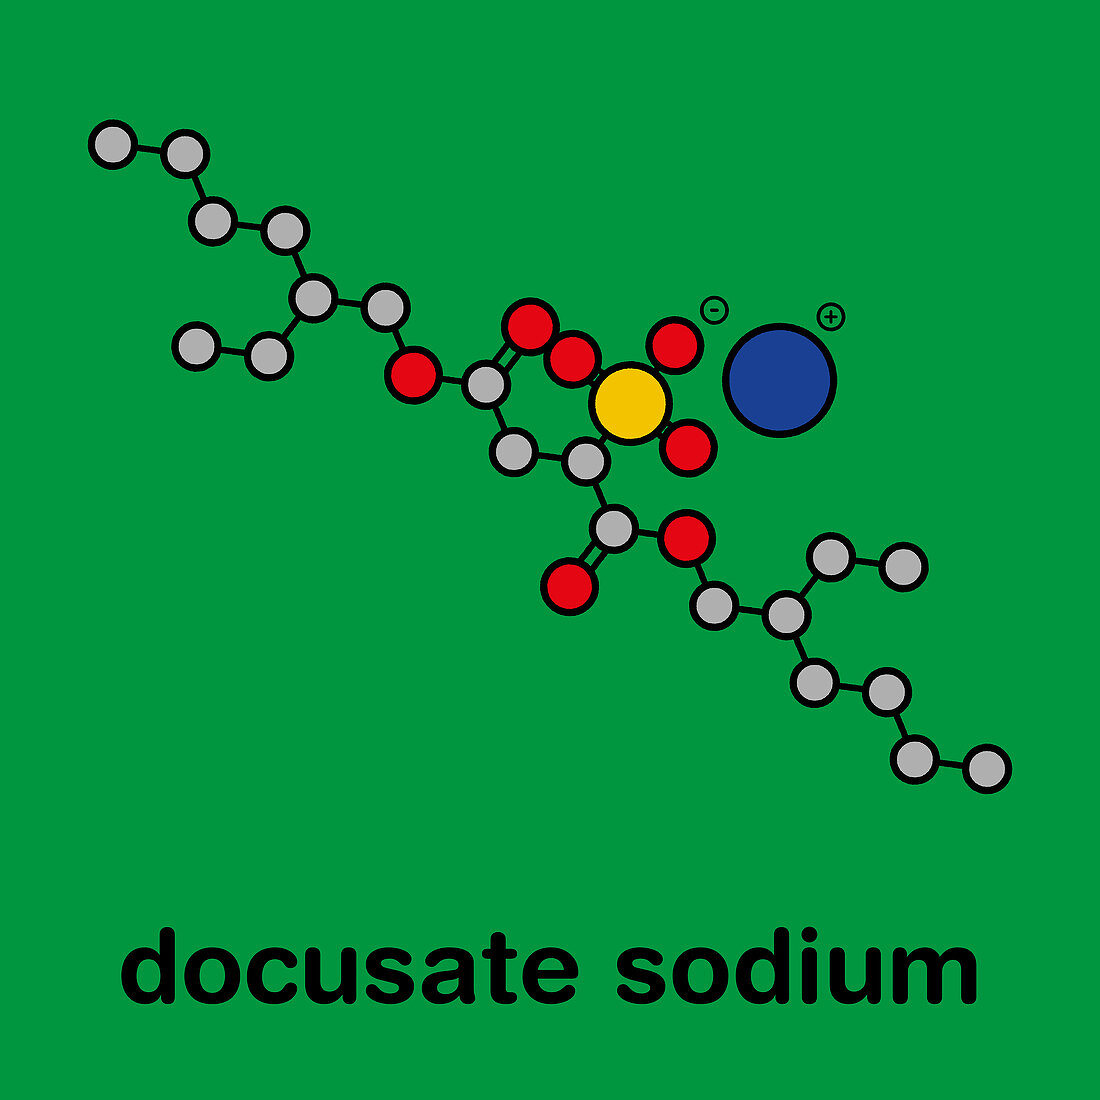 Docusate sodium drug molecule, illustration